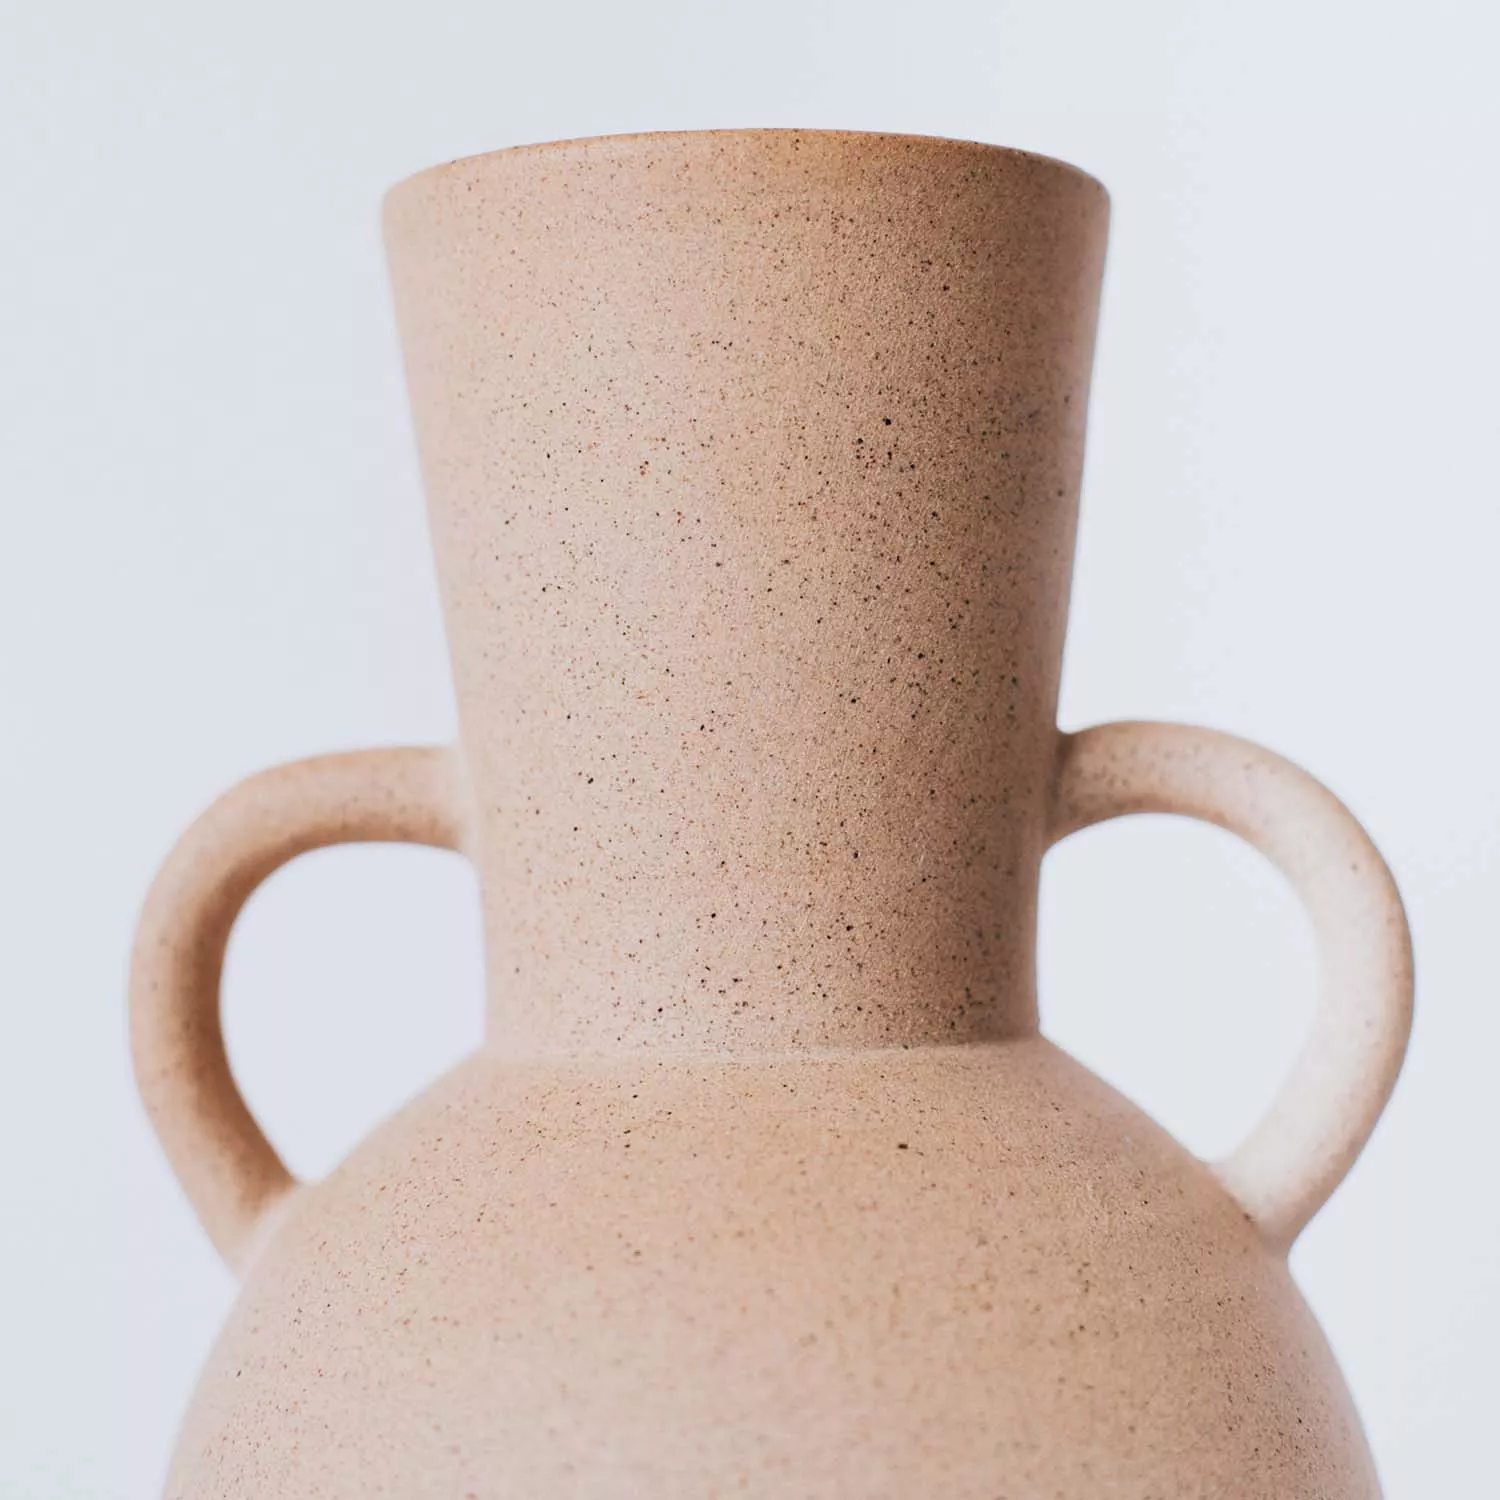 Al Centro Ceramica Tyrenno Vase